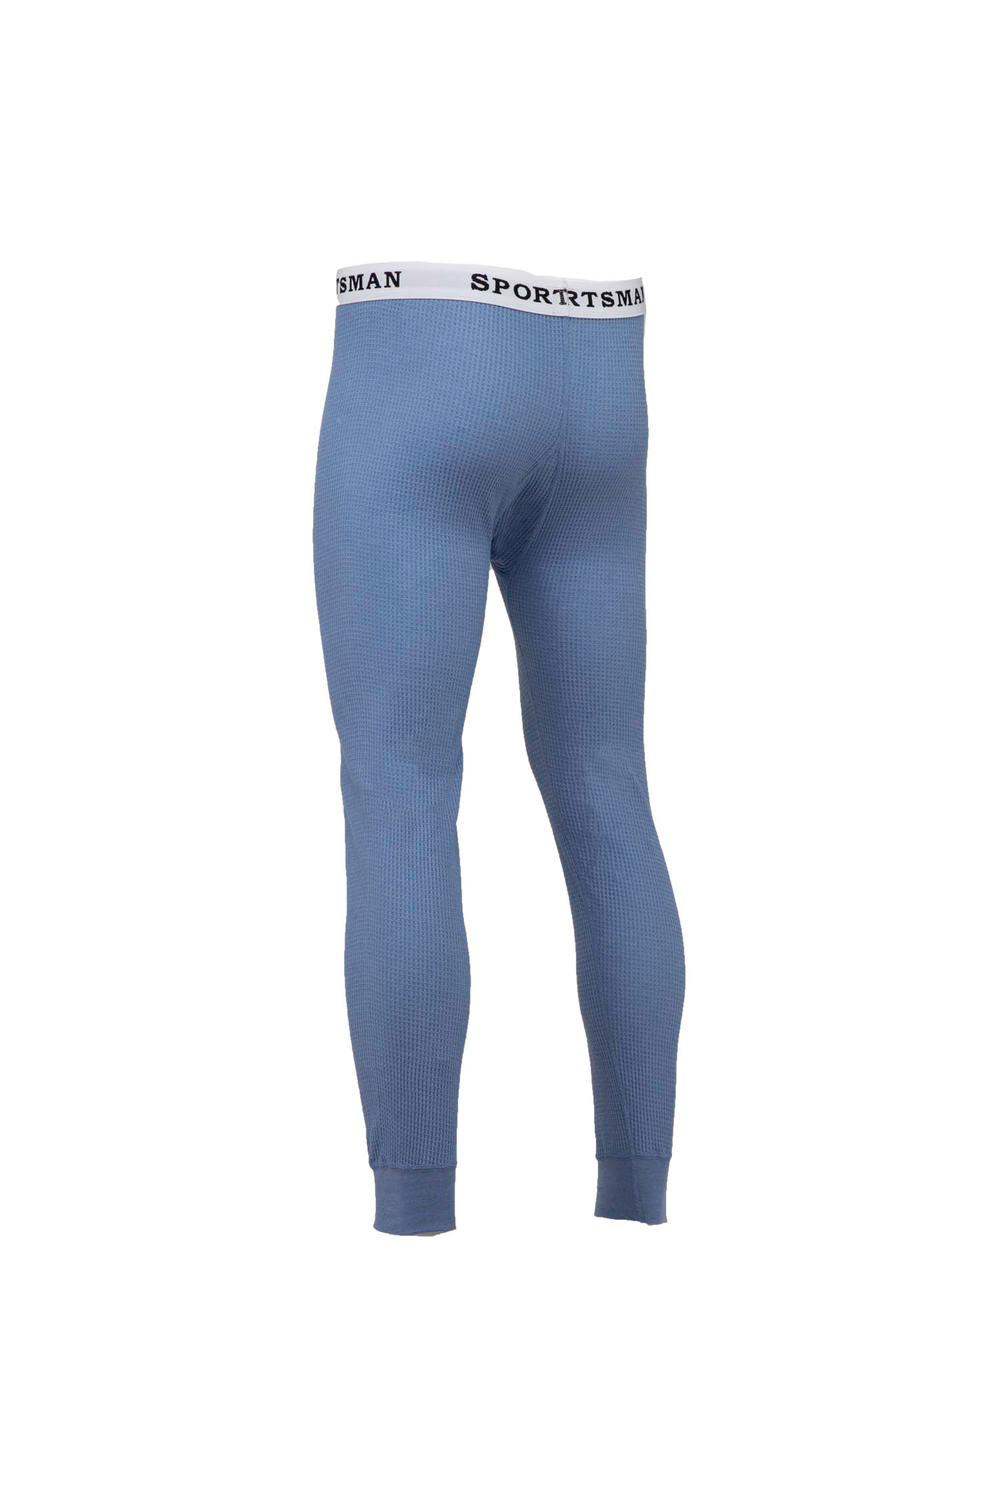 Sportsman - Men's thermal bottoms. Colour: blue. Size: l